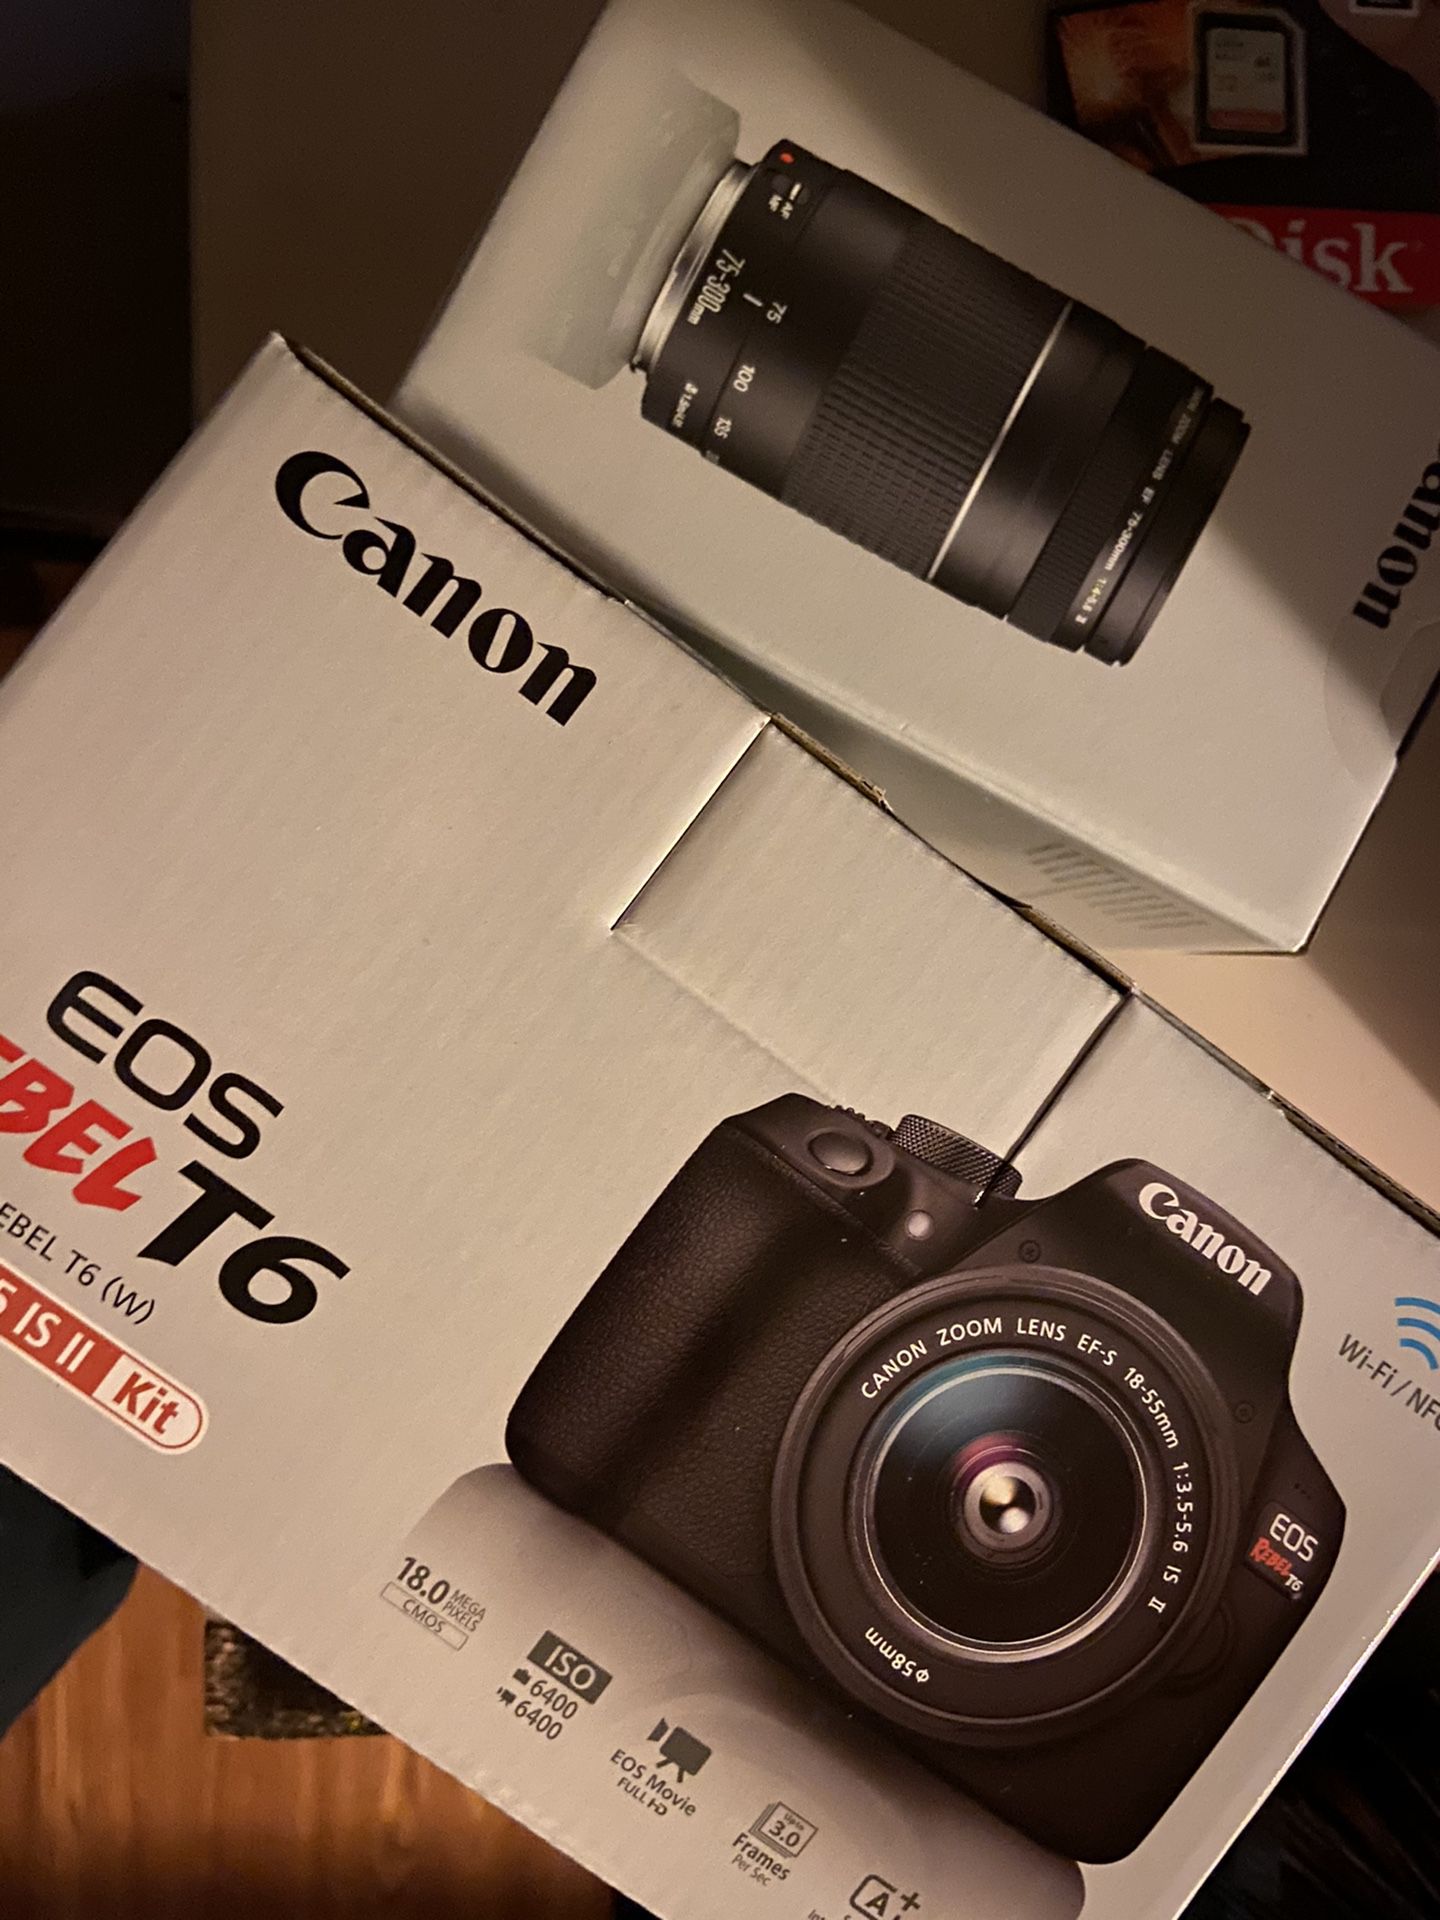 Brand new Canon camera